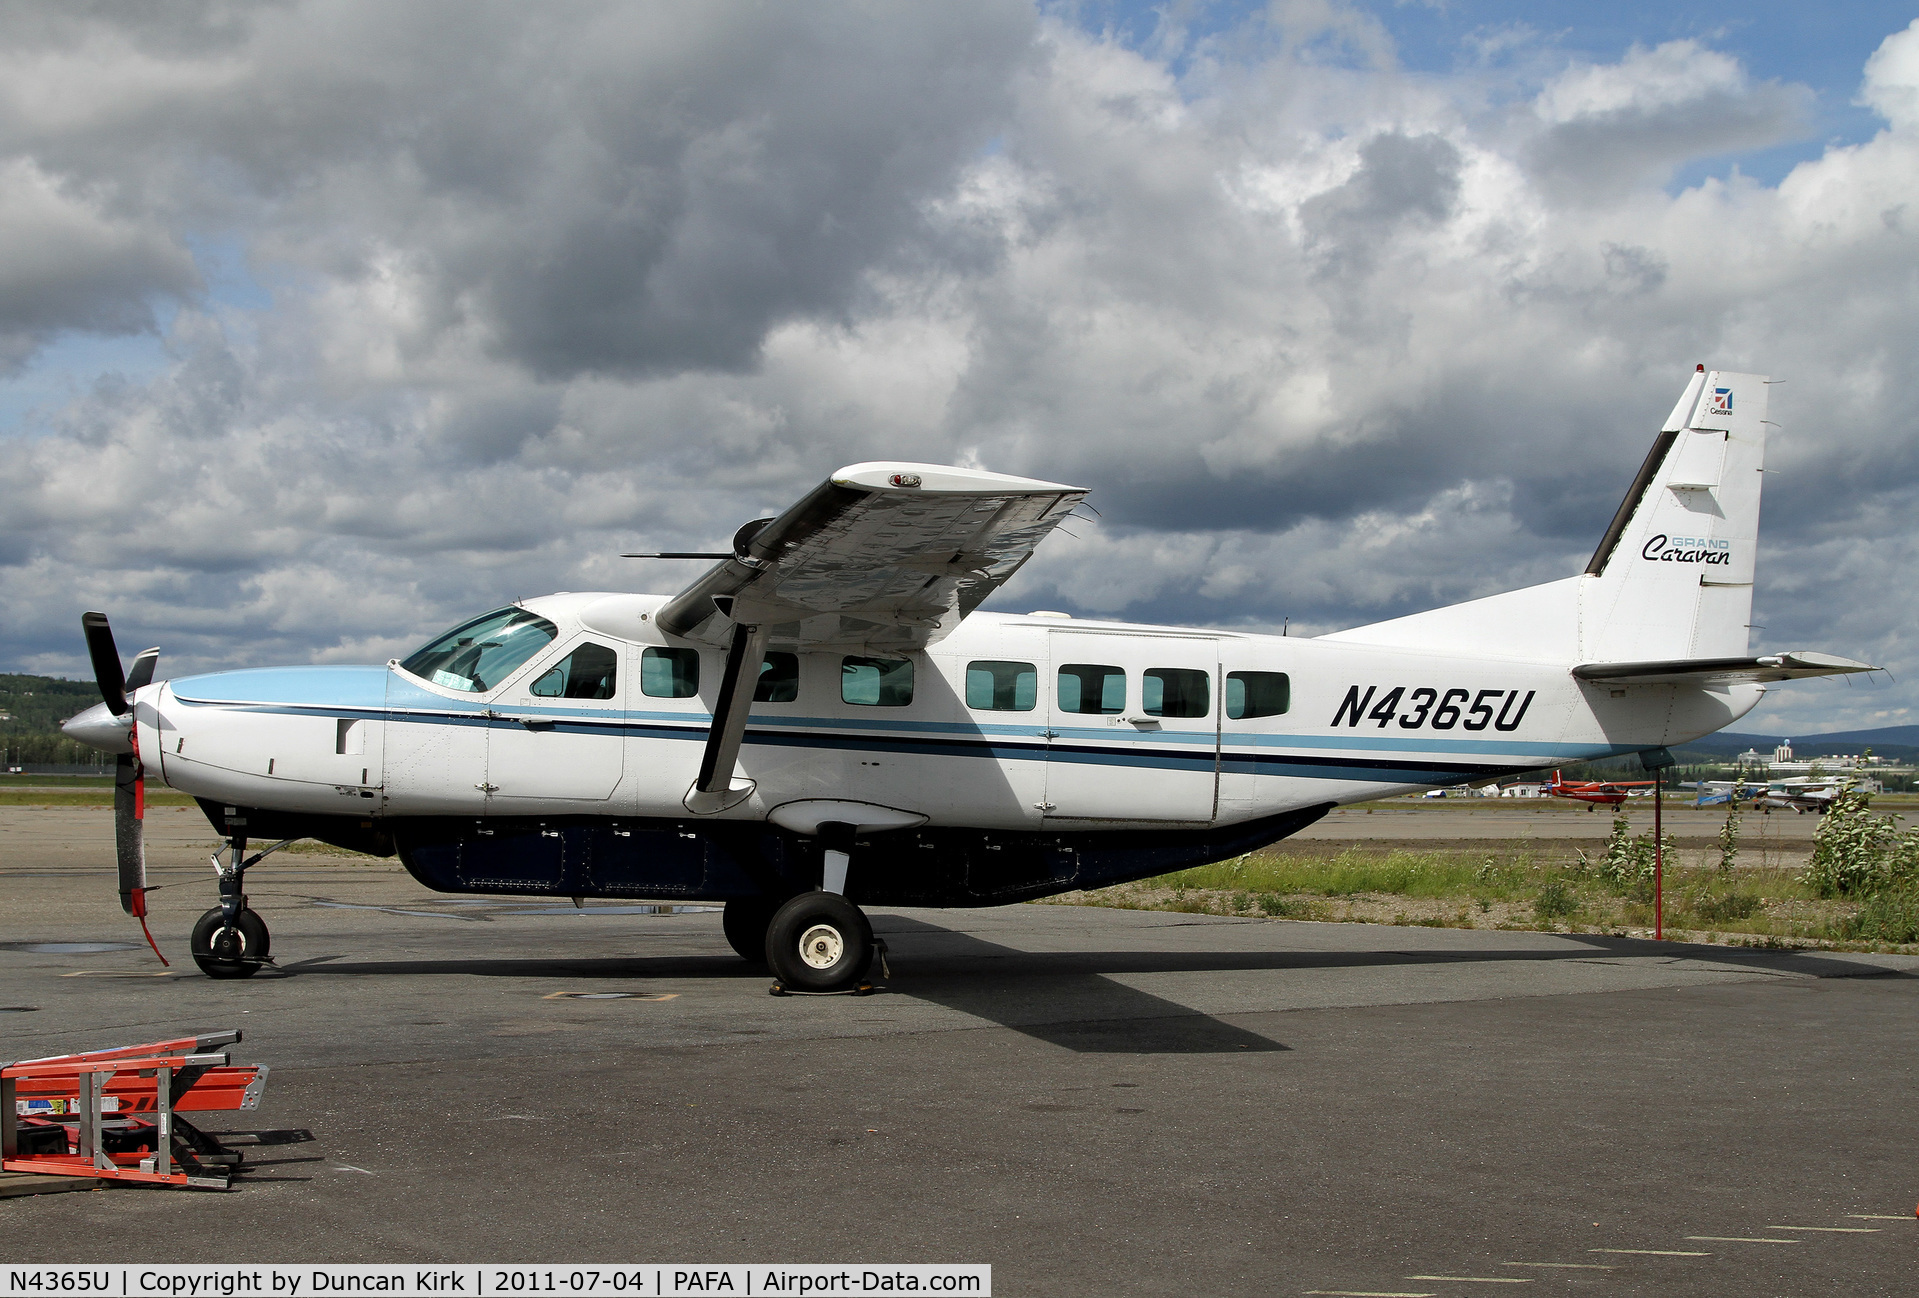 N4365U, 1991 Cessna 208B C/N 208B0253, One of several Caravans located at Fairbanks